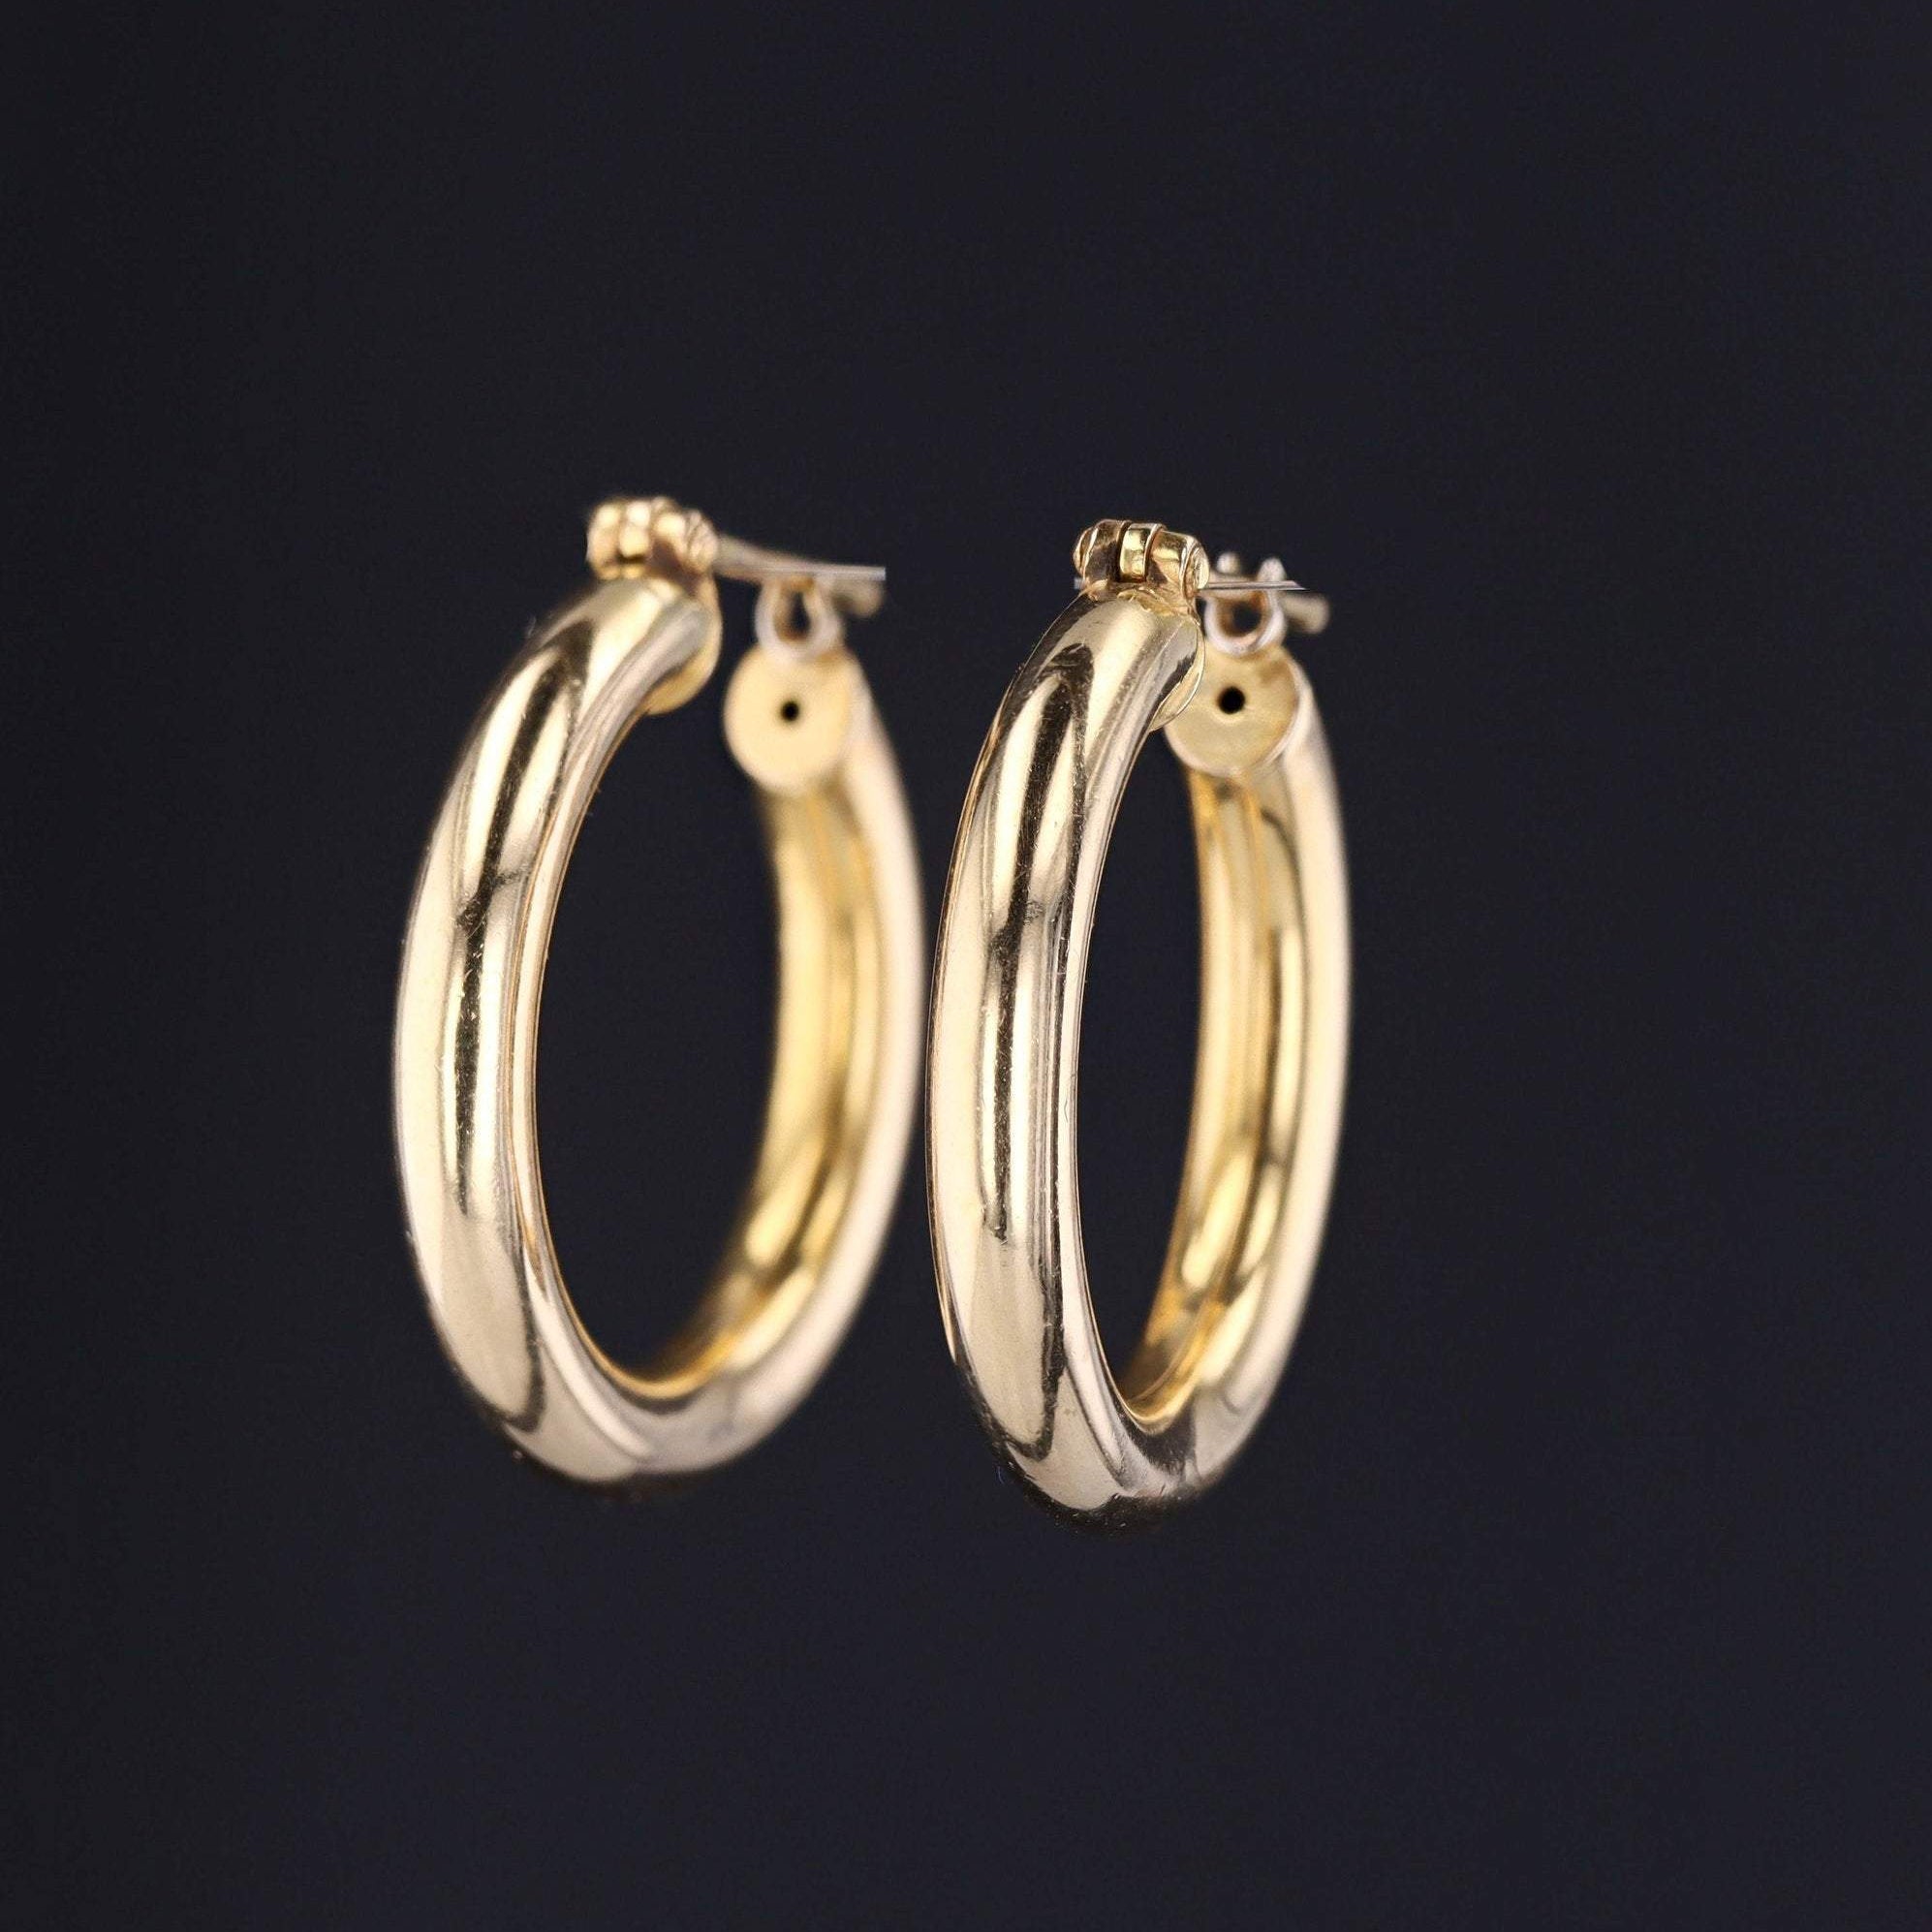 Large 14k Gold Hoop Earrings | Vintage 14k Gold Earrings | 14k Gold Earrings | Latch Back Hoop Earrings